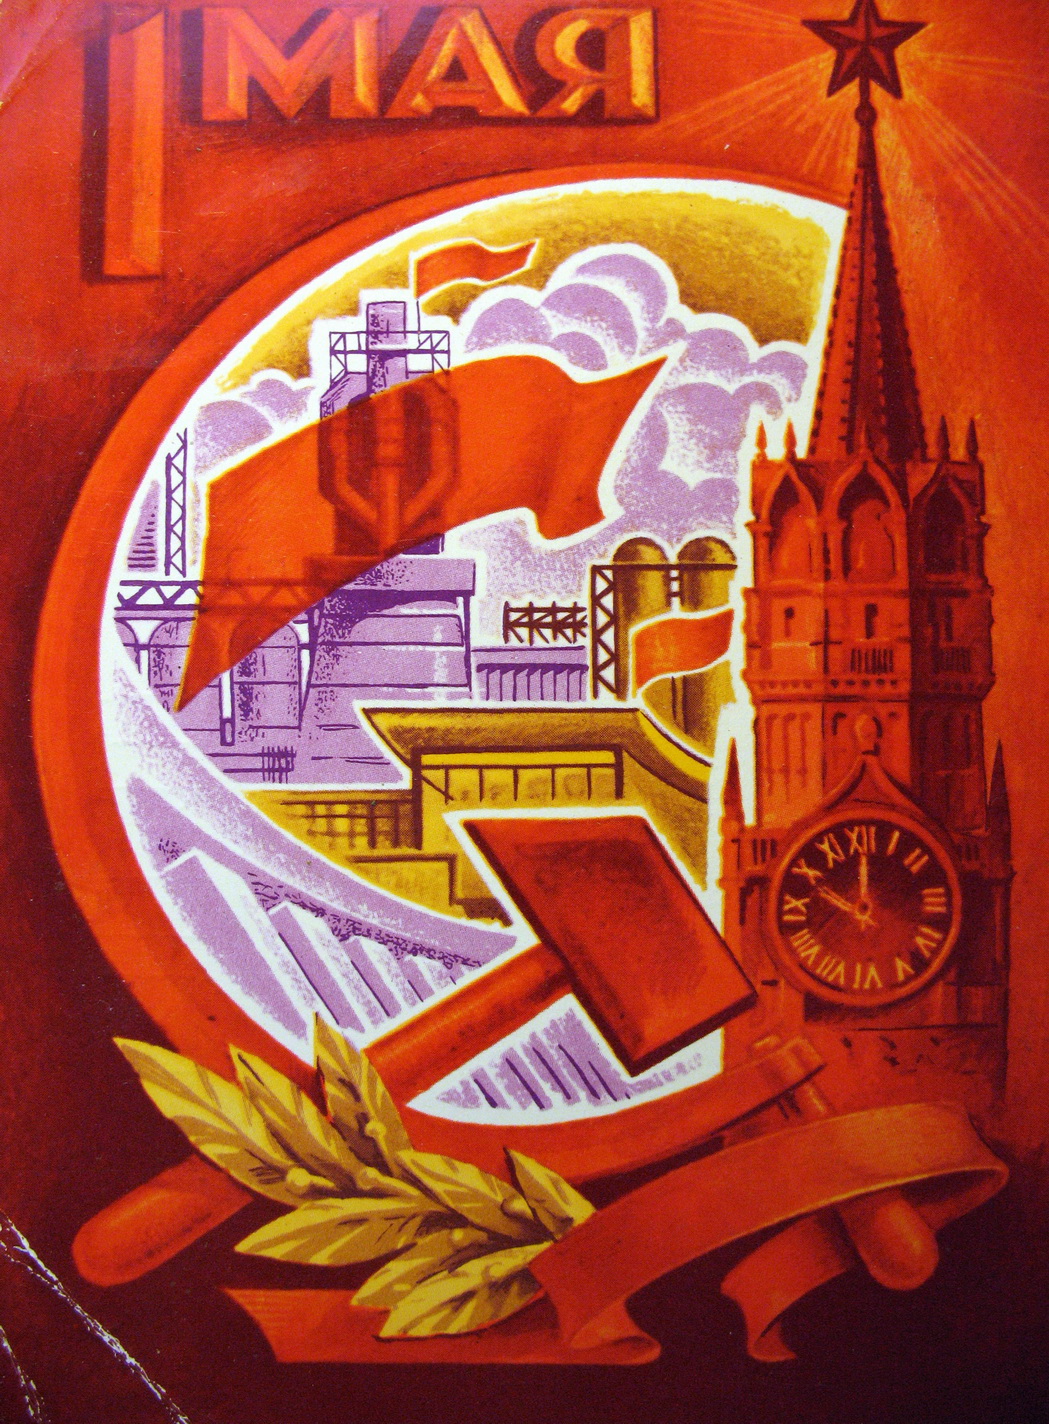 Открытки и картинки СССР на первомай бесплатно без регистрации и смс